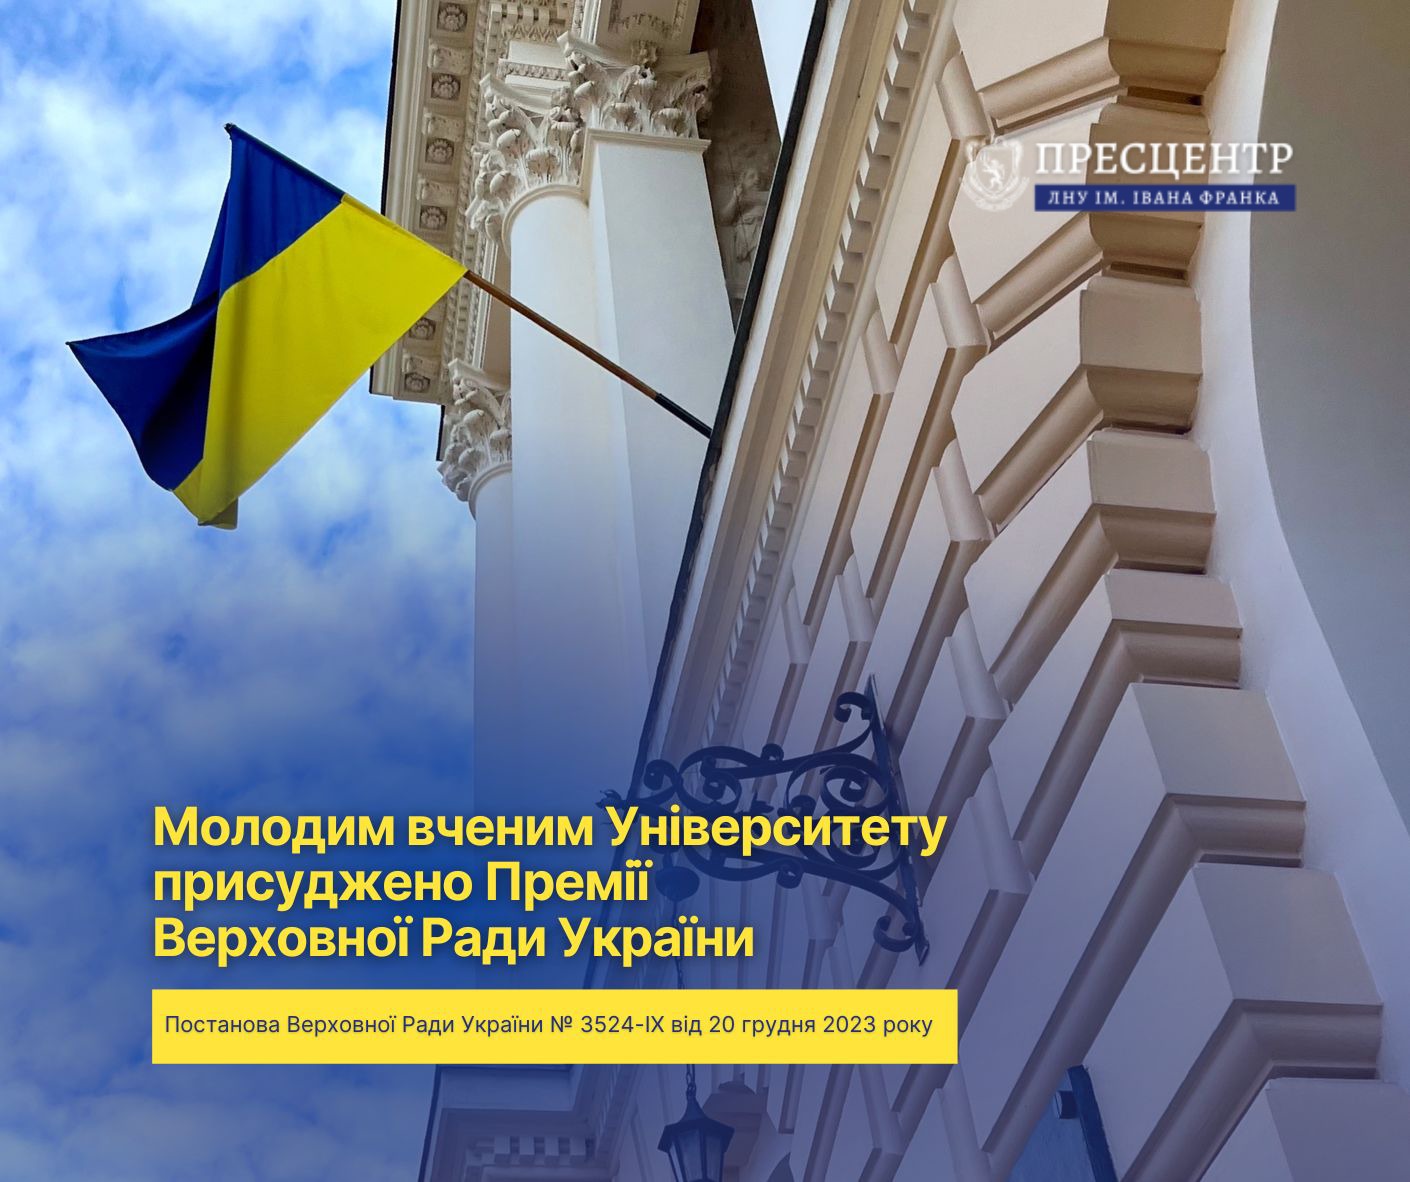 Молодим вченим Університету присуджено Премії Верховної Ради України